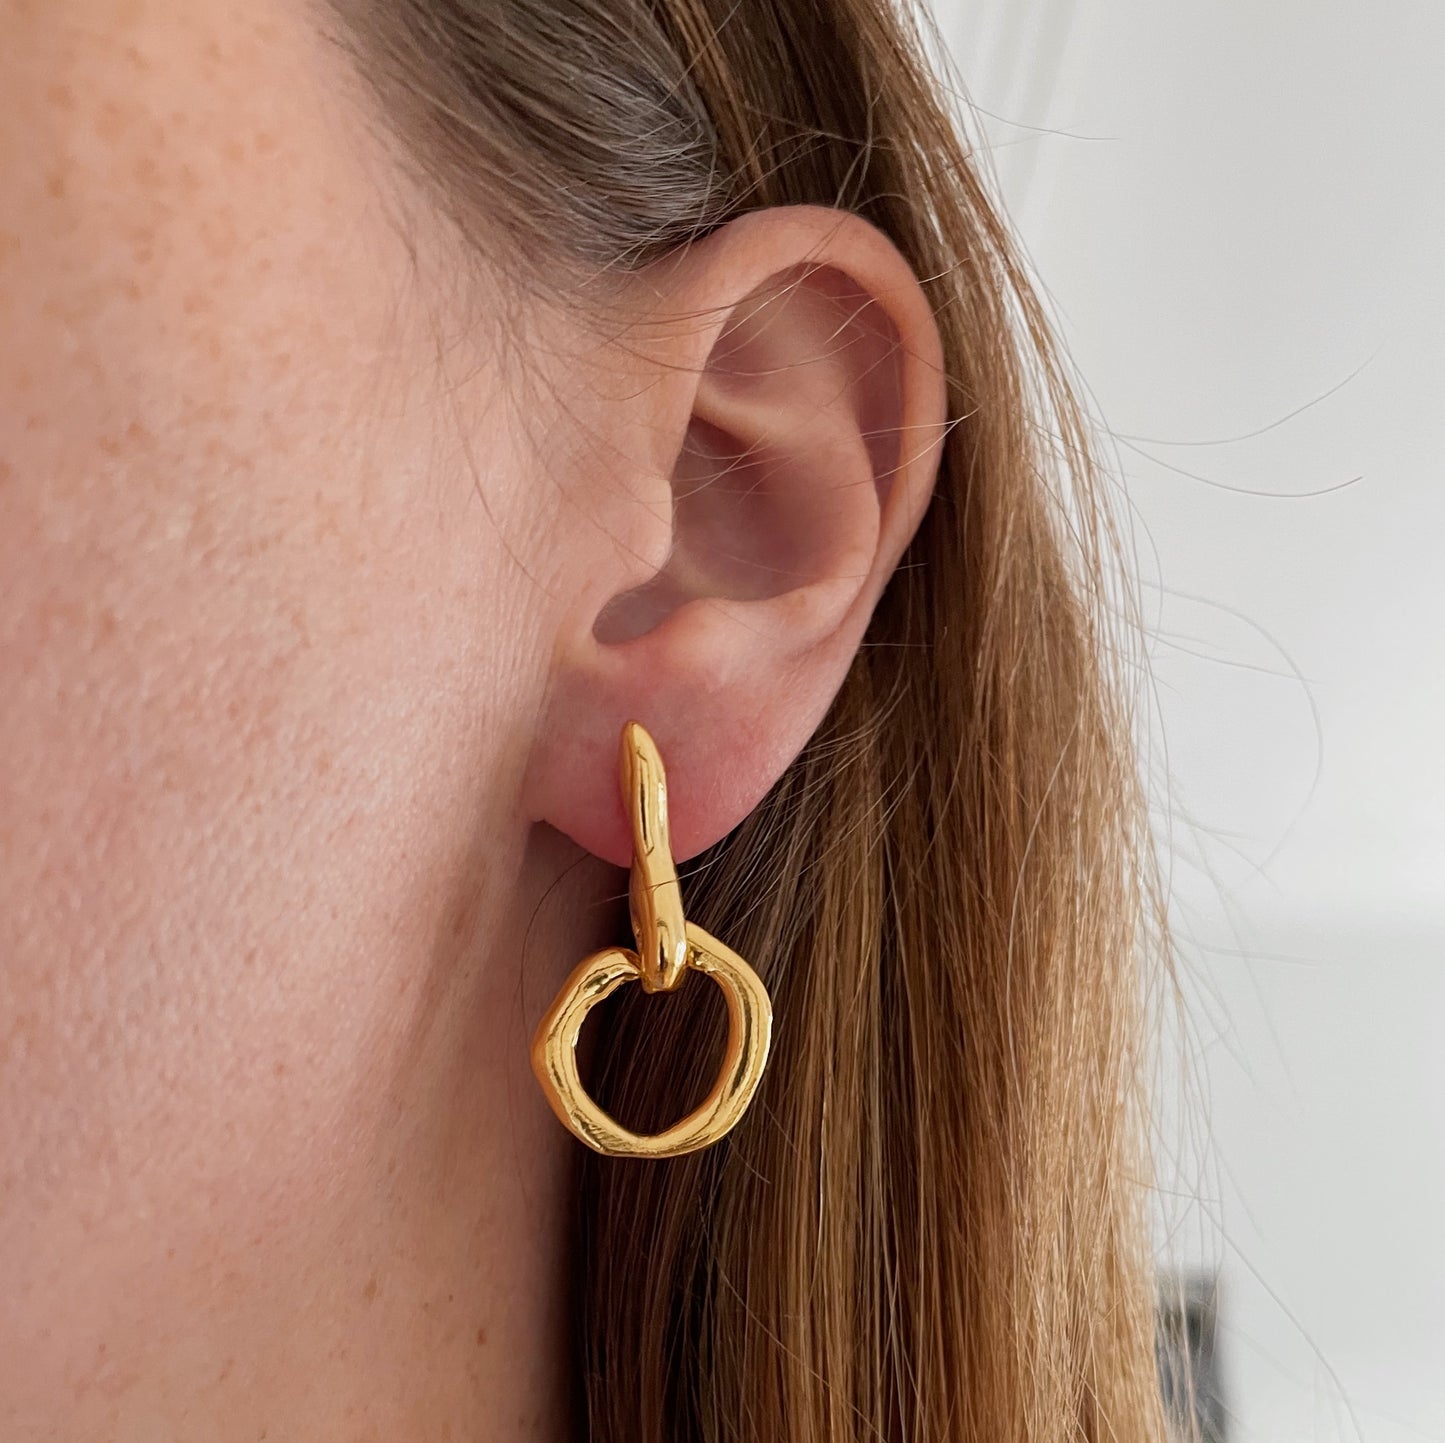 Lane earrings